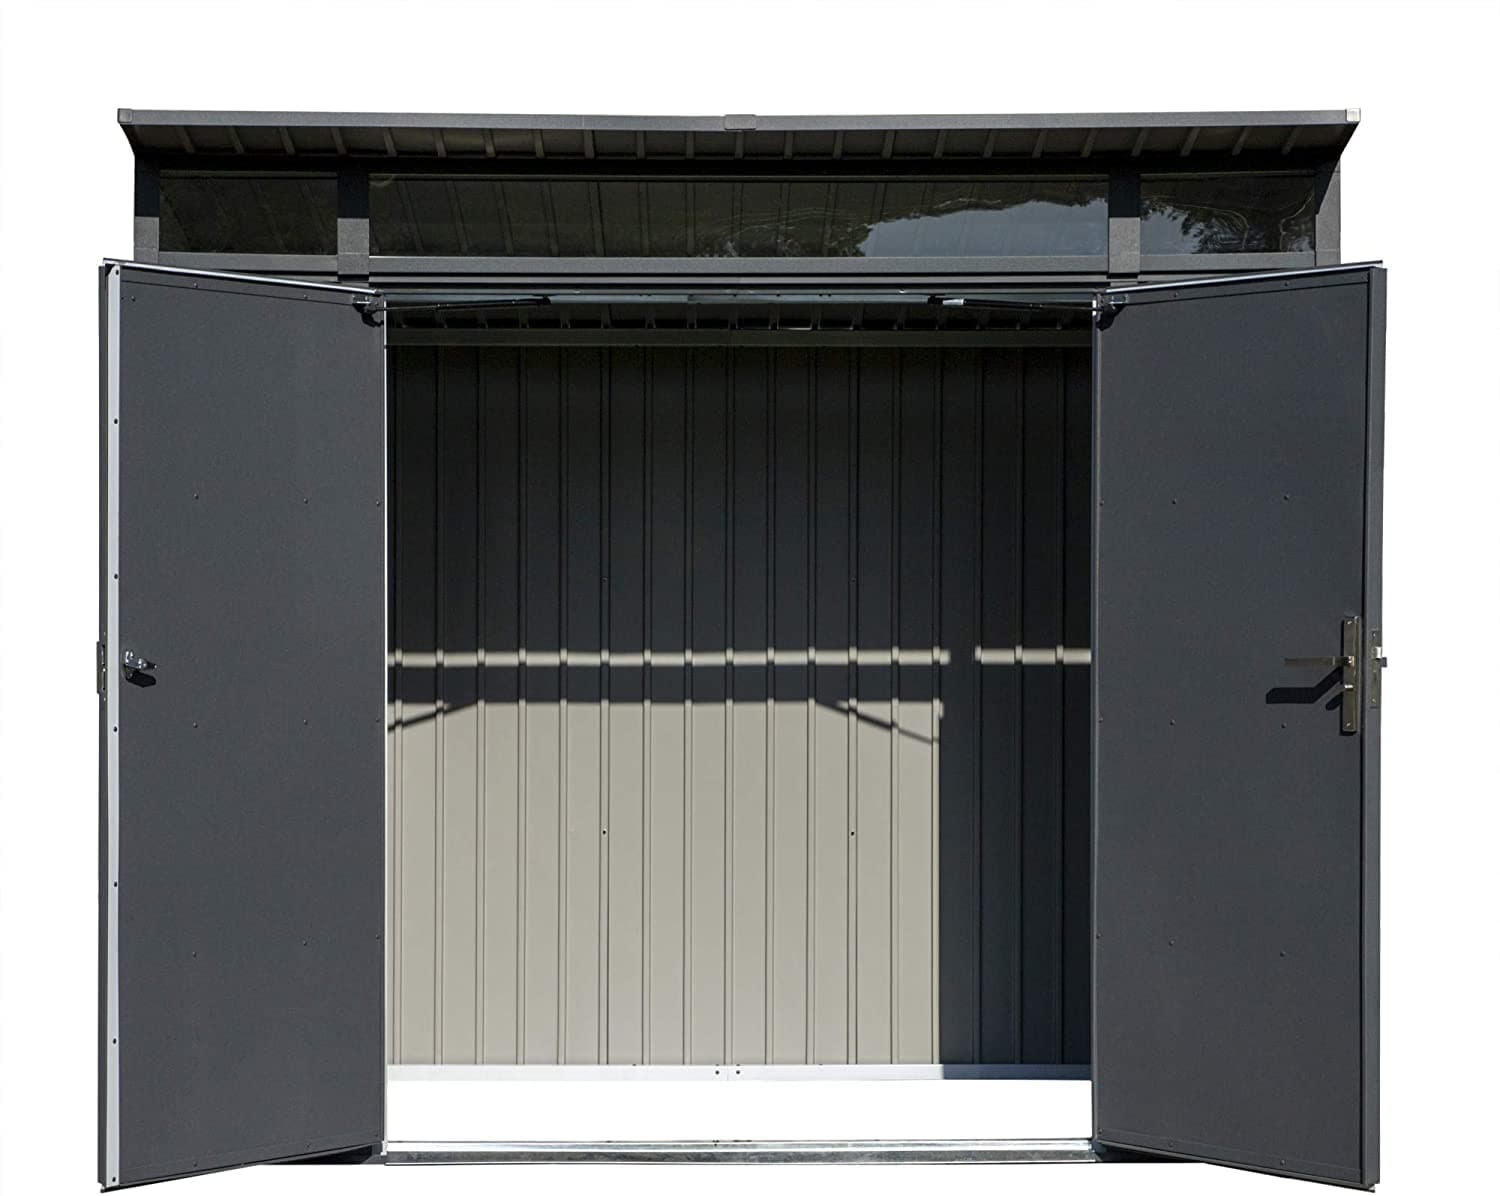 Sojag Denali Outdoor Lockable Steel Storage Building with Windows - 8' x 5' - Senior.com Storage Building